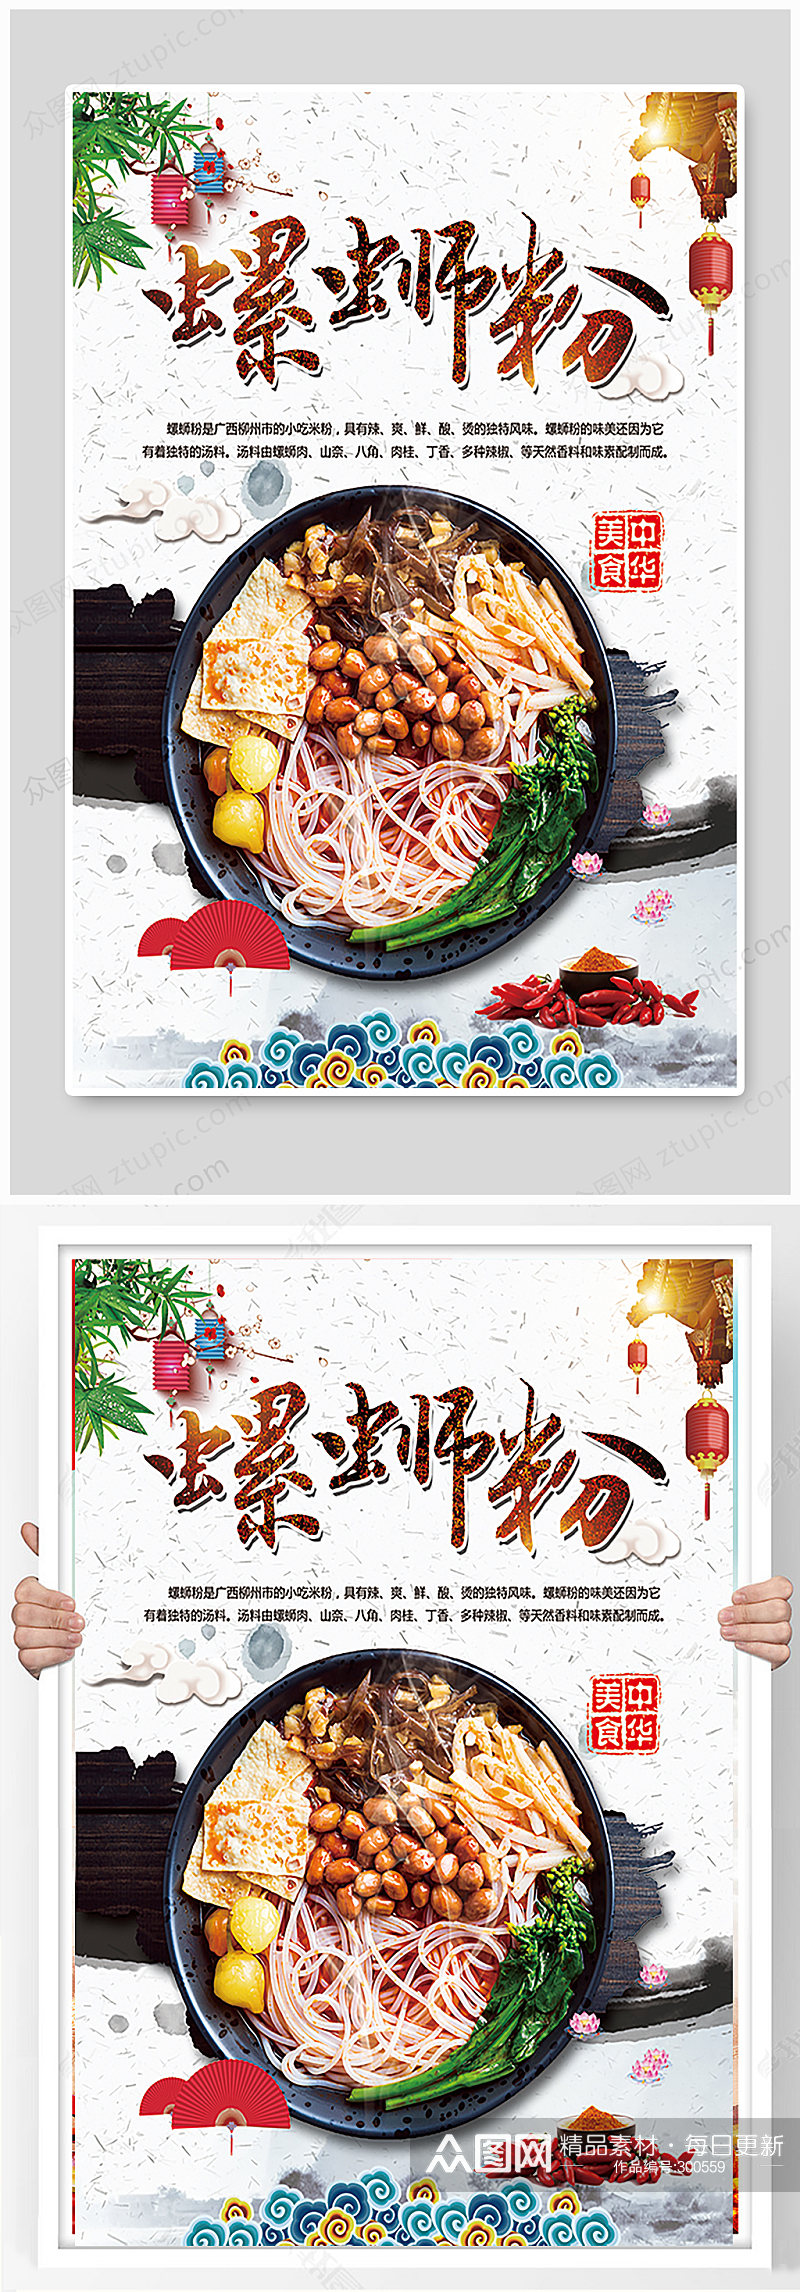 精品中国风螺蛳粉海报设计素材